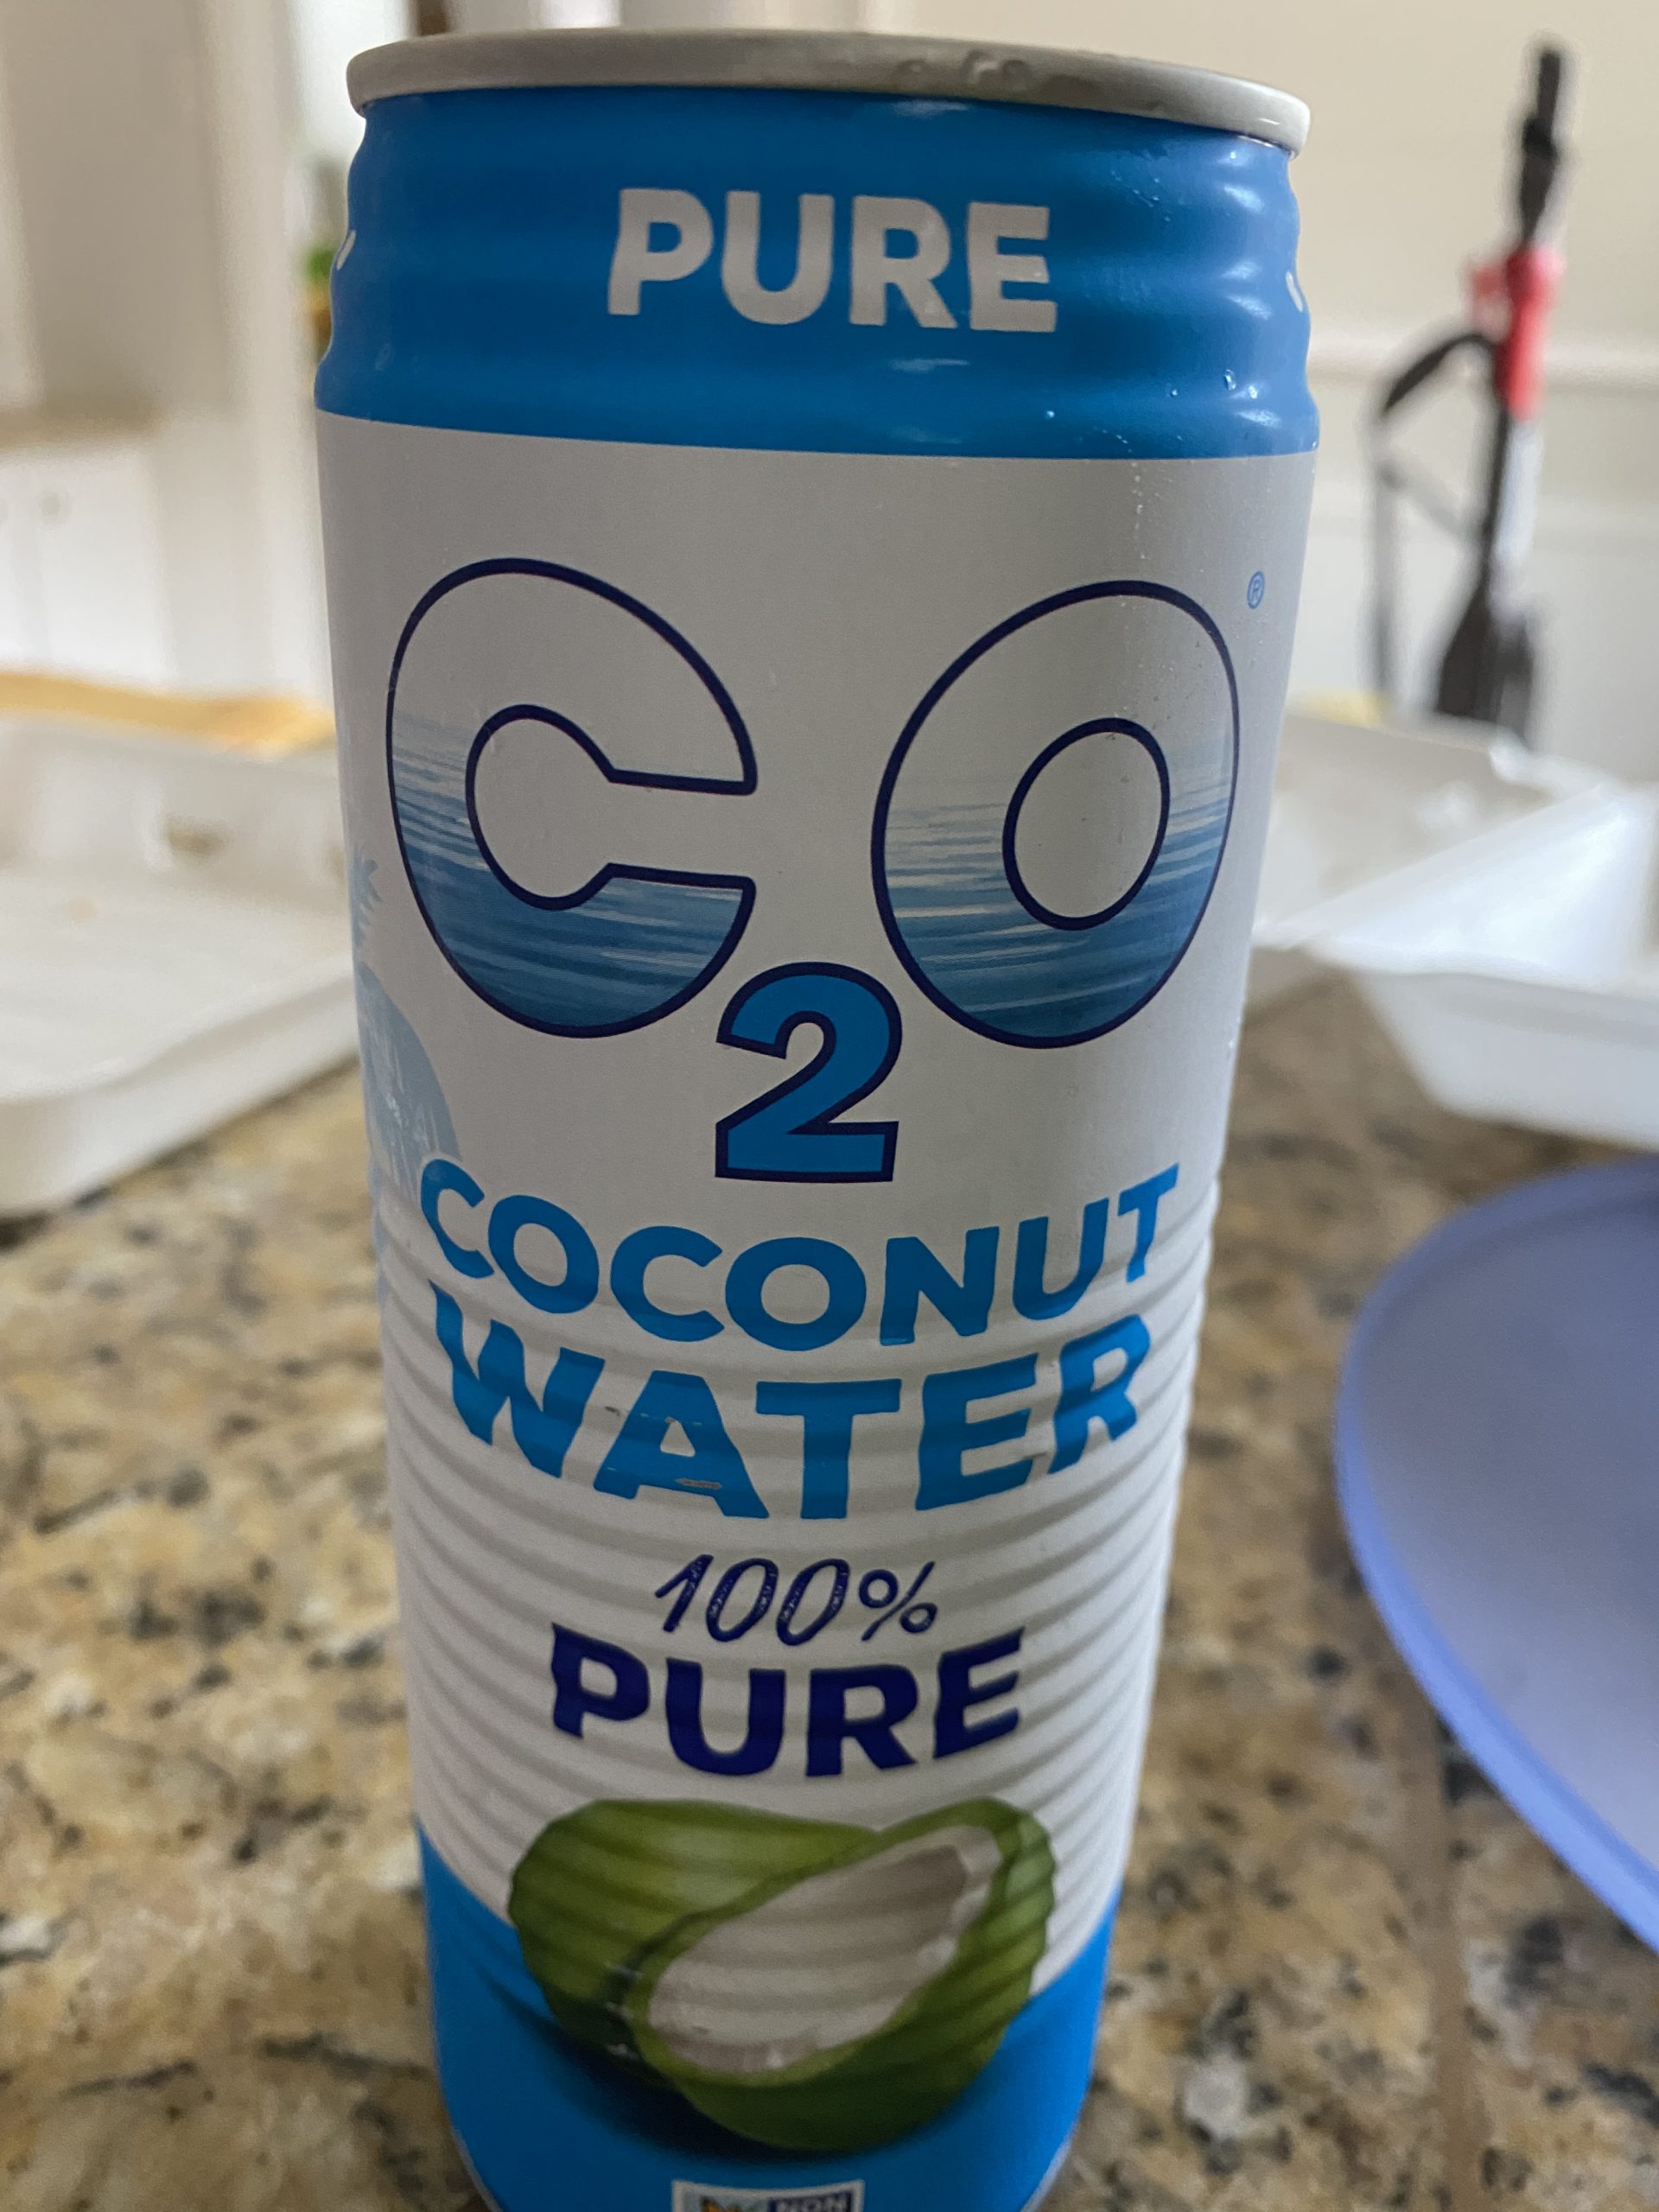 C20 coconut water